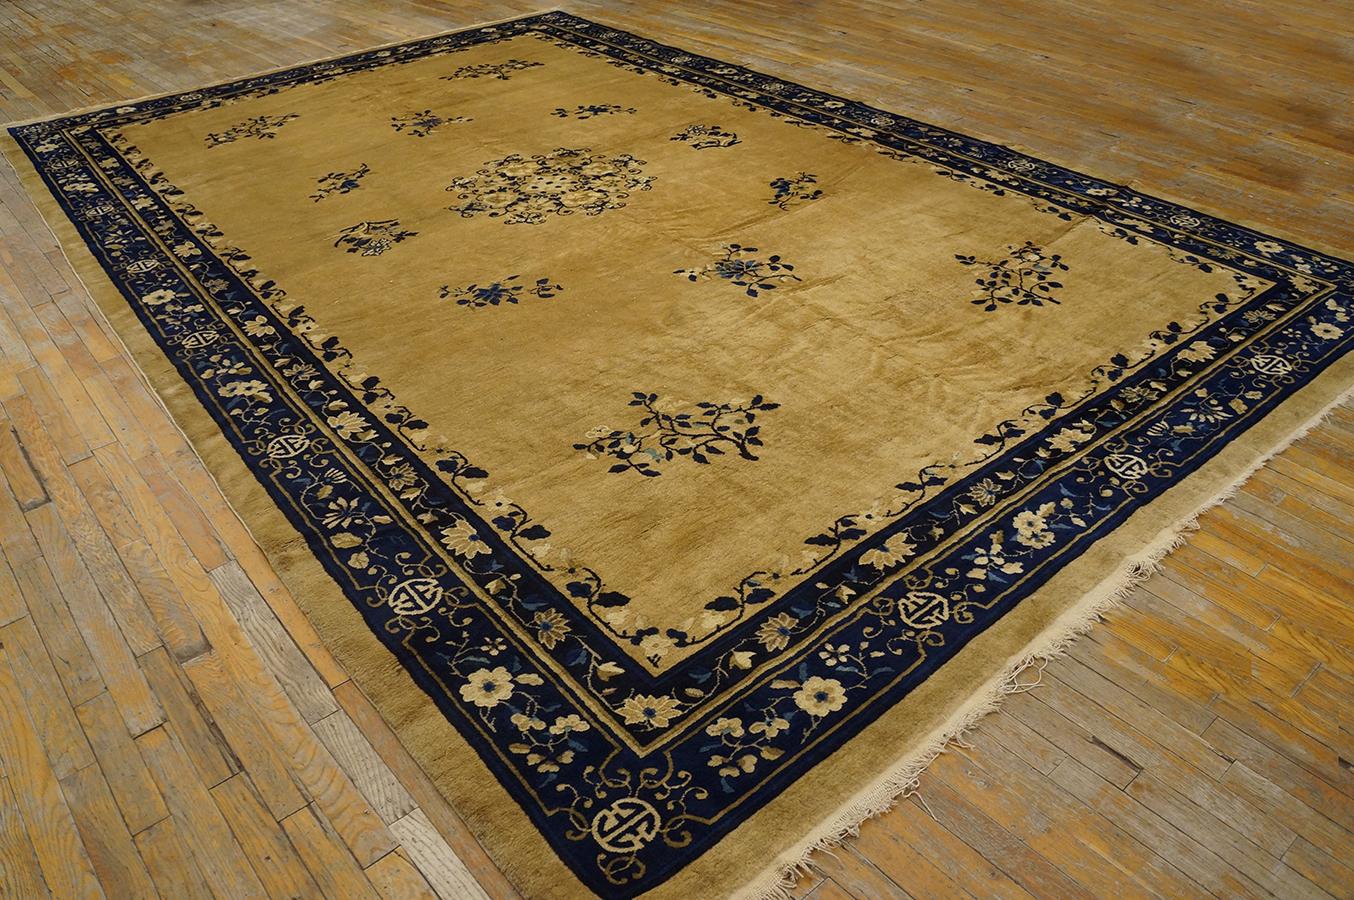 Antique Chinese Peking rug, Size: 9' 0'' x 14' 3''.